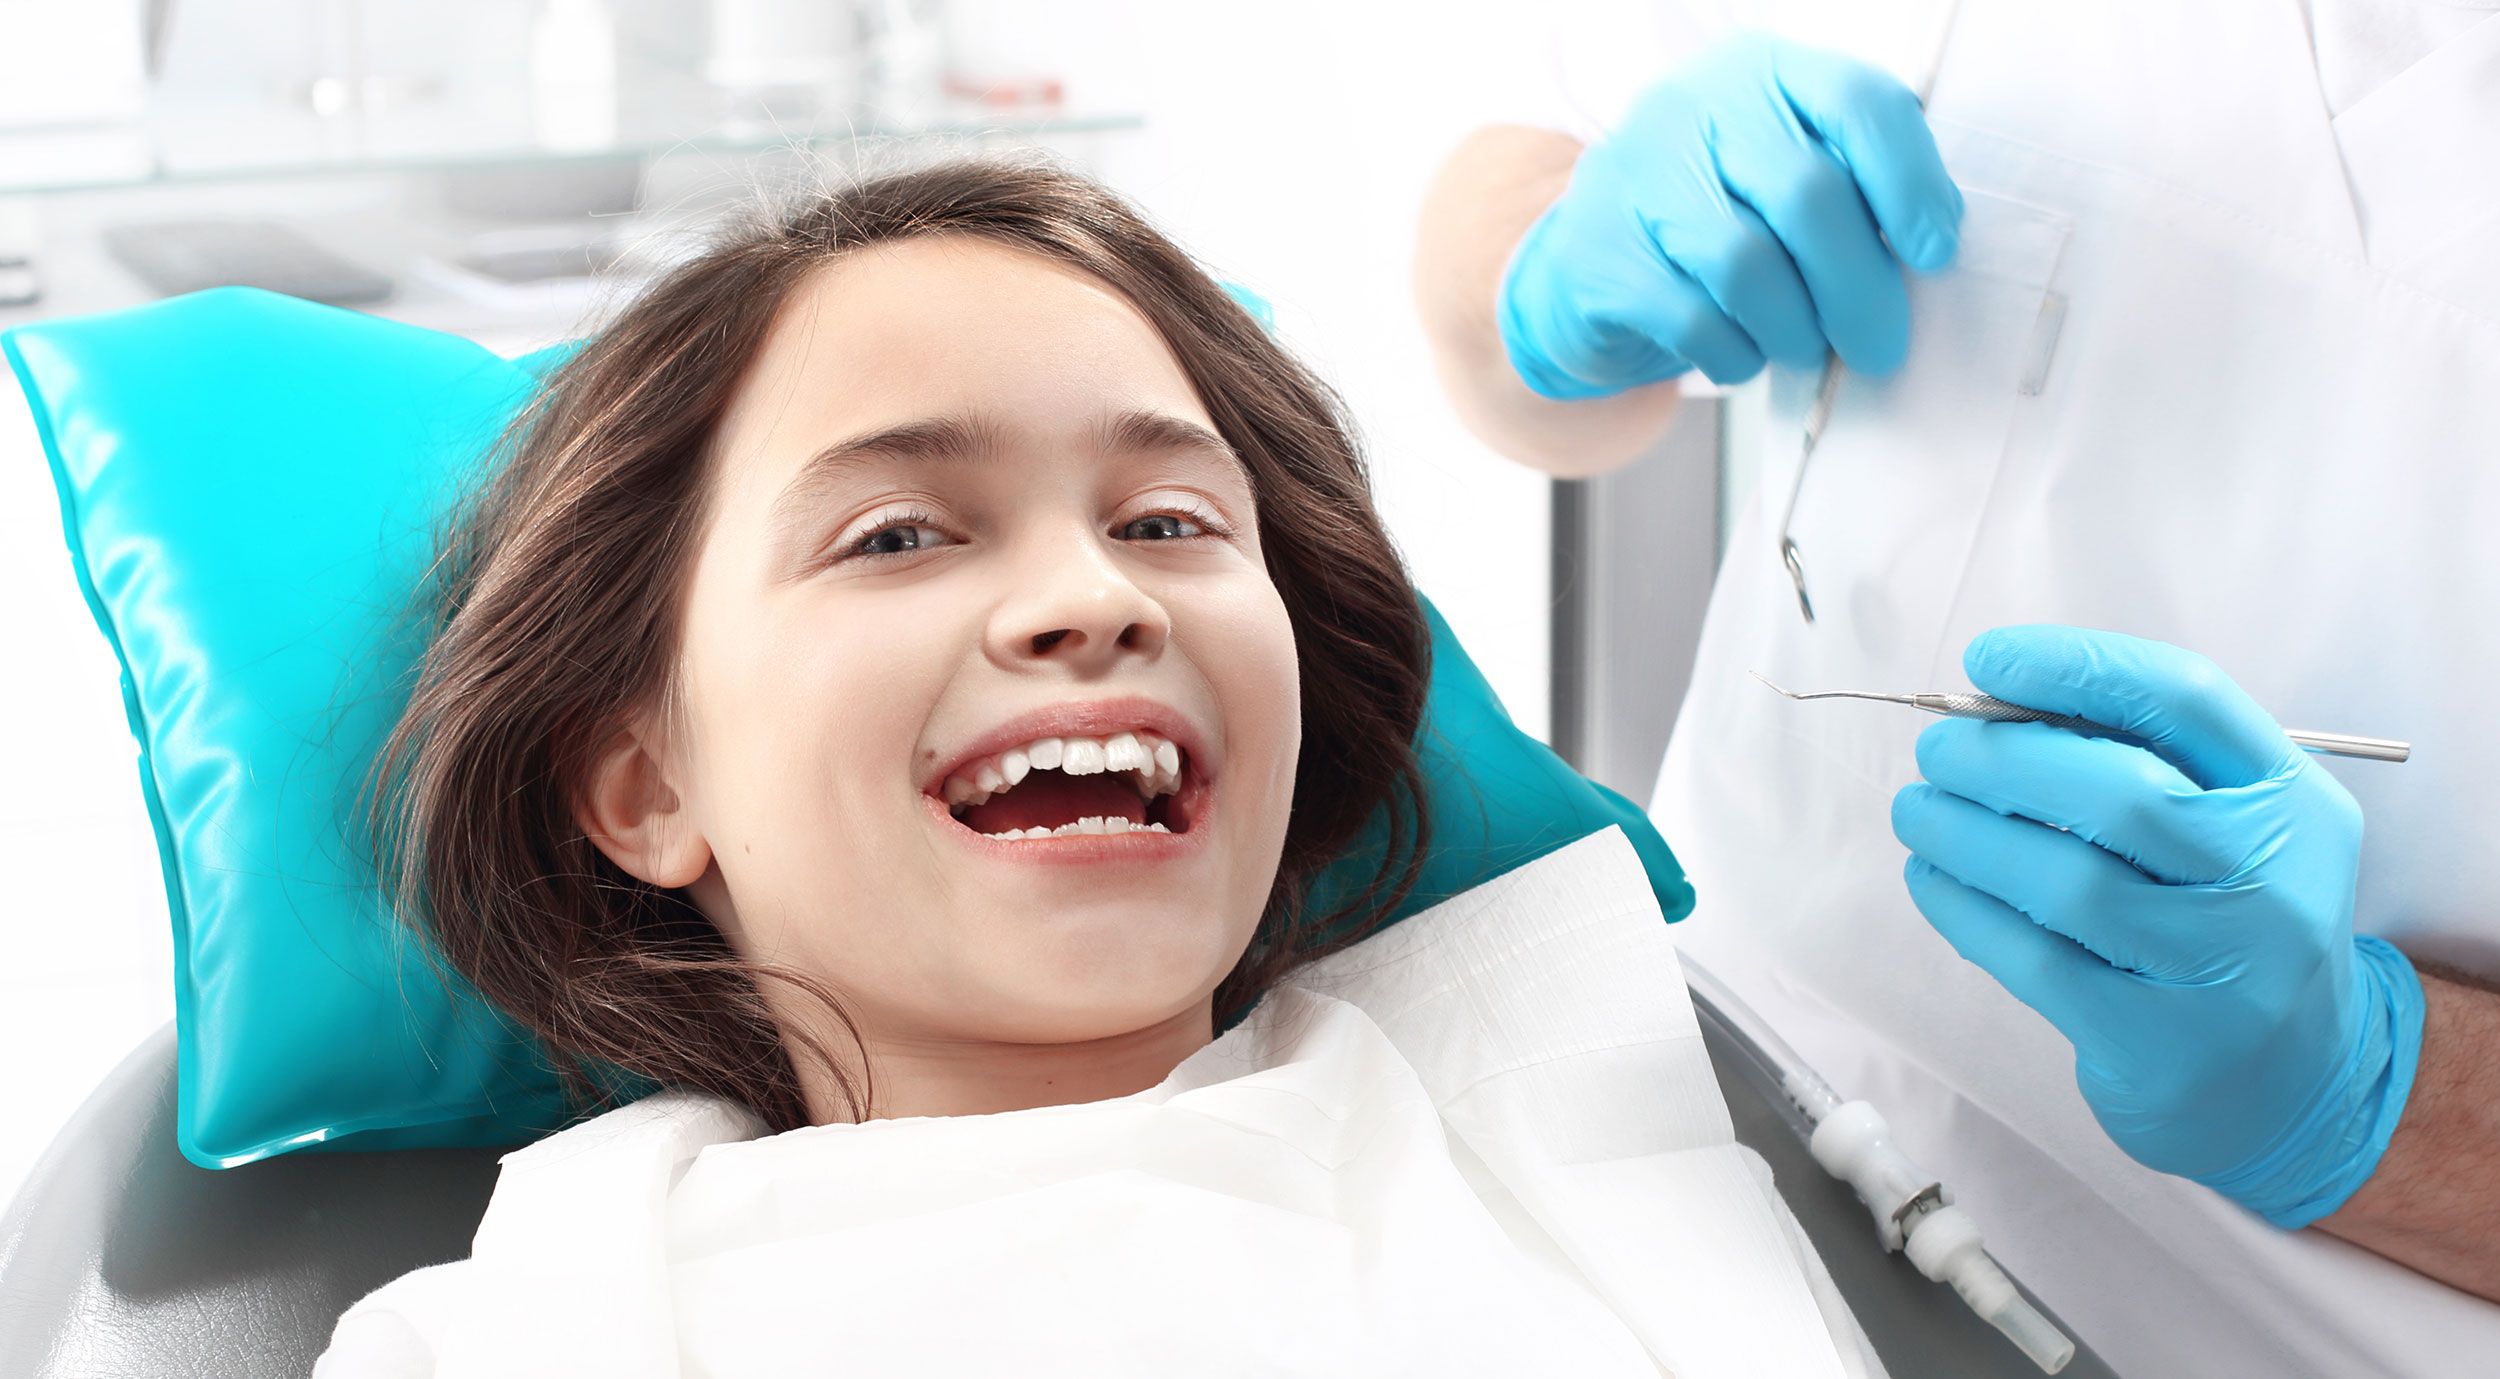 Obraz przedstawiający uśmiech dziecka w gabinecie dentystycznym